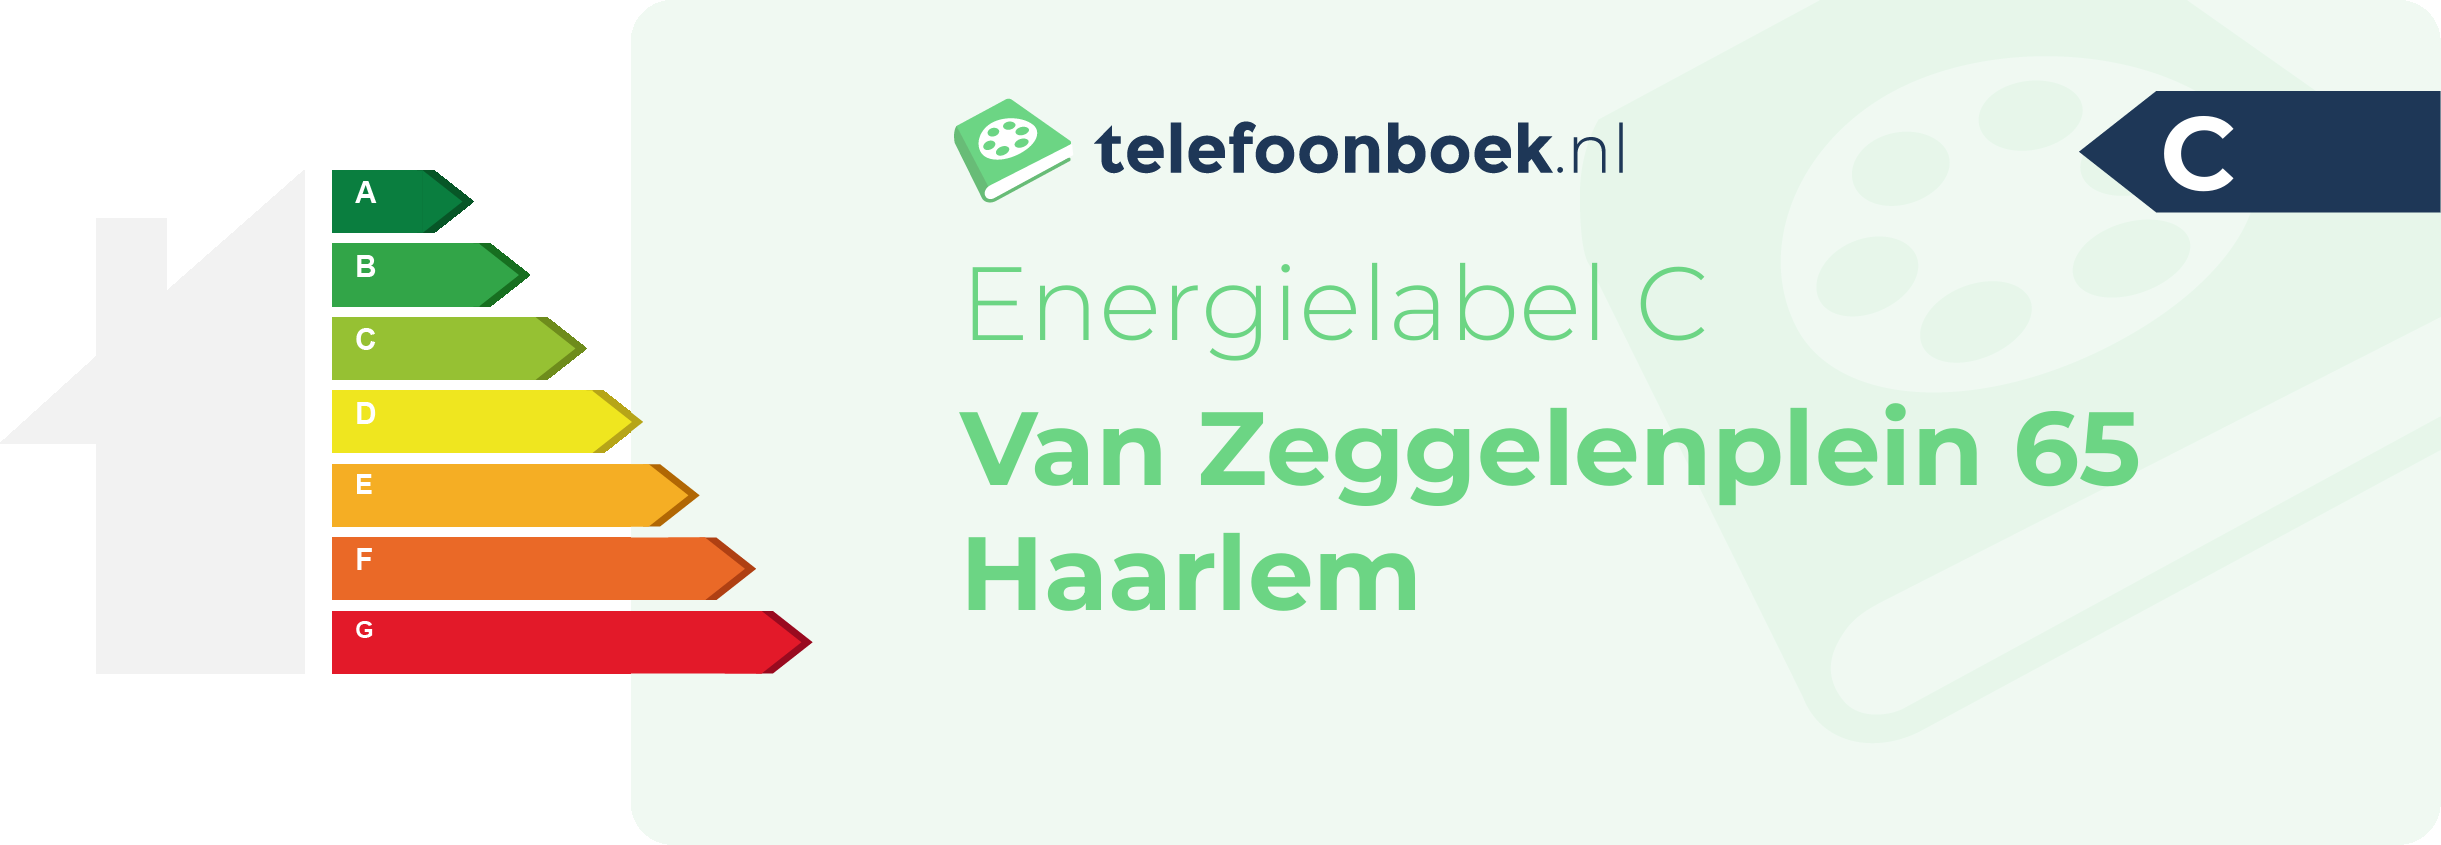 Energielabel Van Zeggelenplein 65 Haarlem